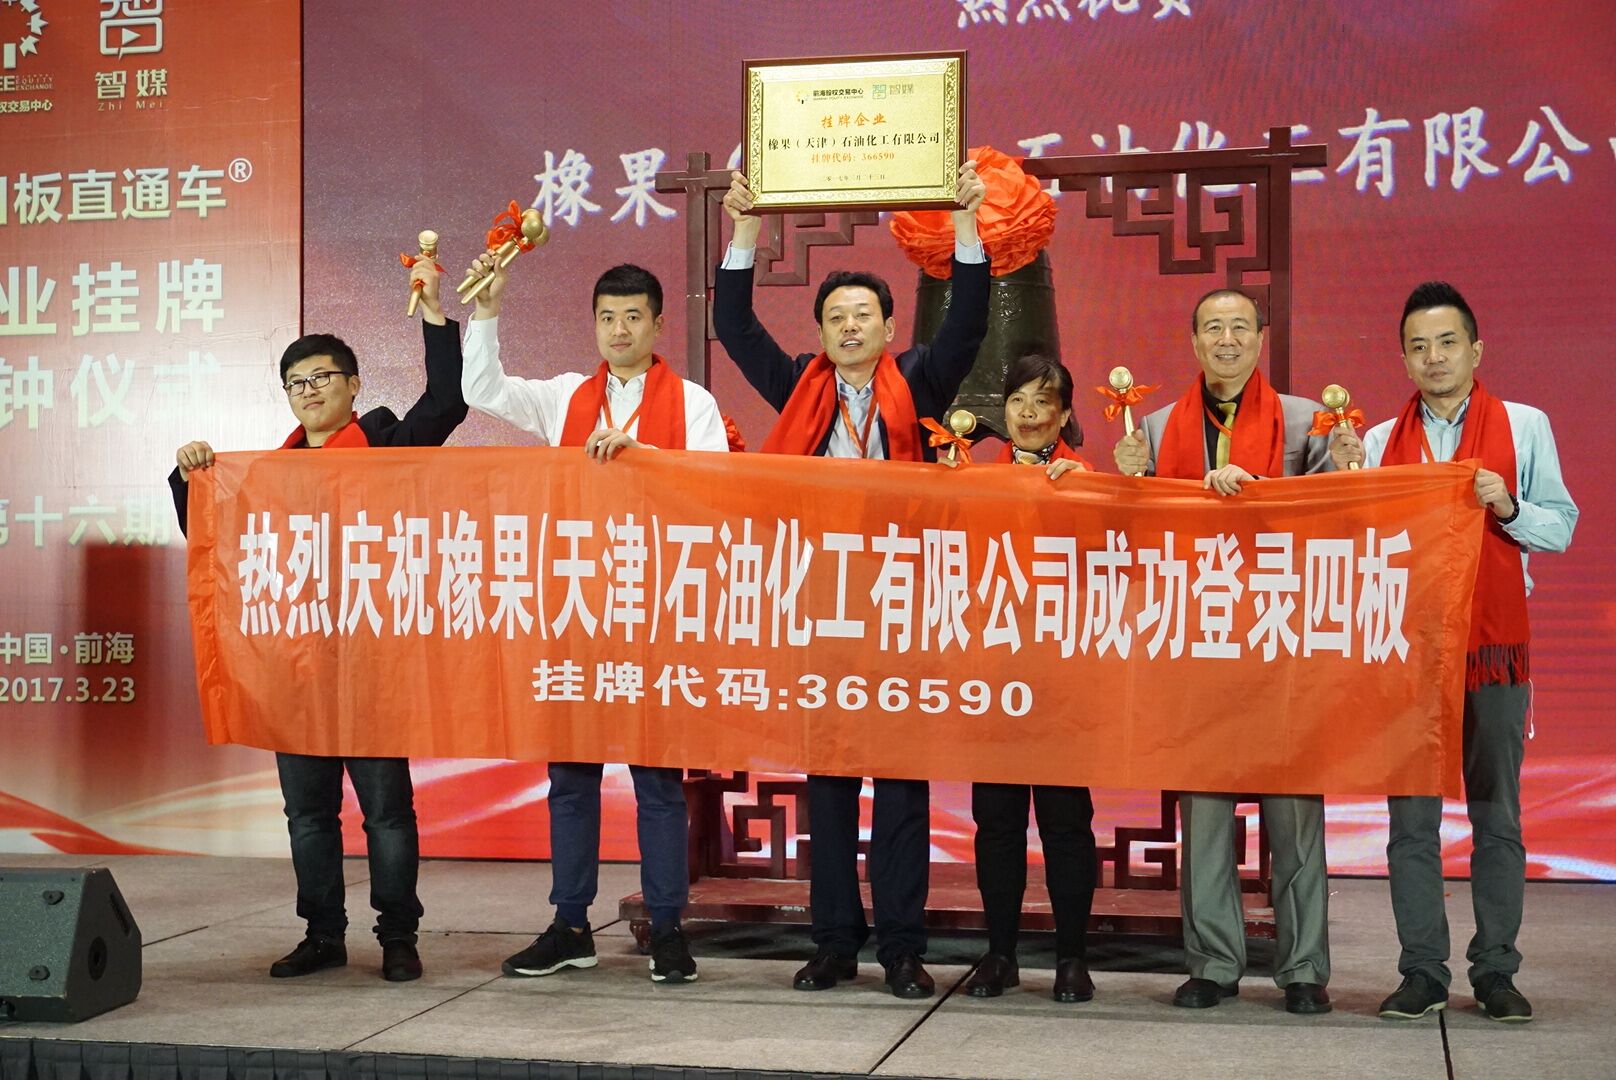 橡果(天津)石油化工有限公司成功挂牌新四板